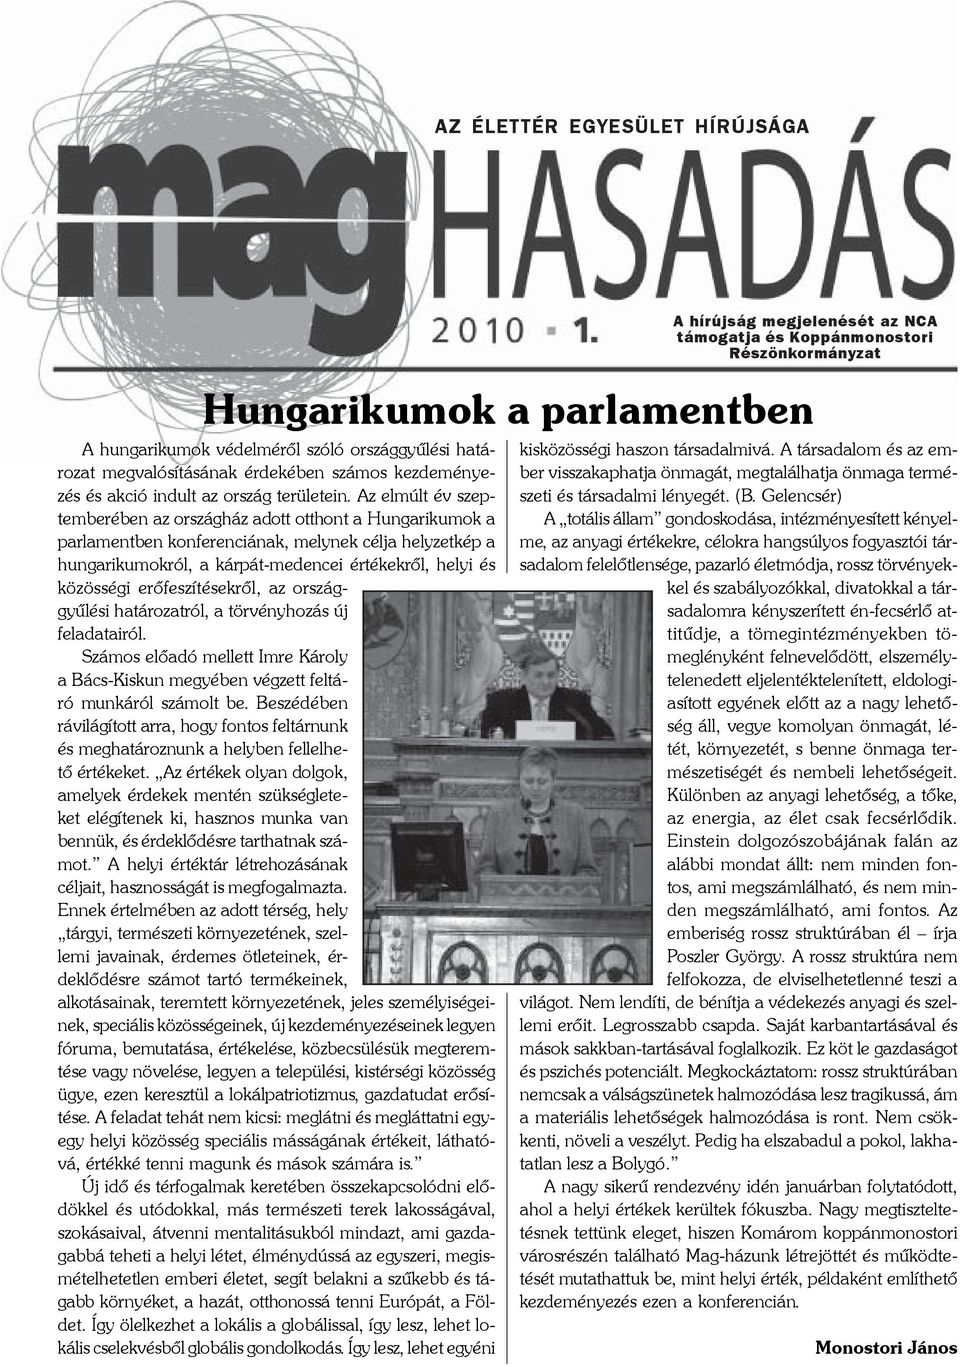 Az elmúlt év szeptemberében az országház adott otthont a Hungarikumok a parlamentben konferenciának, melynek célja helyzetkép a hungarikumokról, a kárpát-medencei értékekrõl, helyi és közösségi